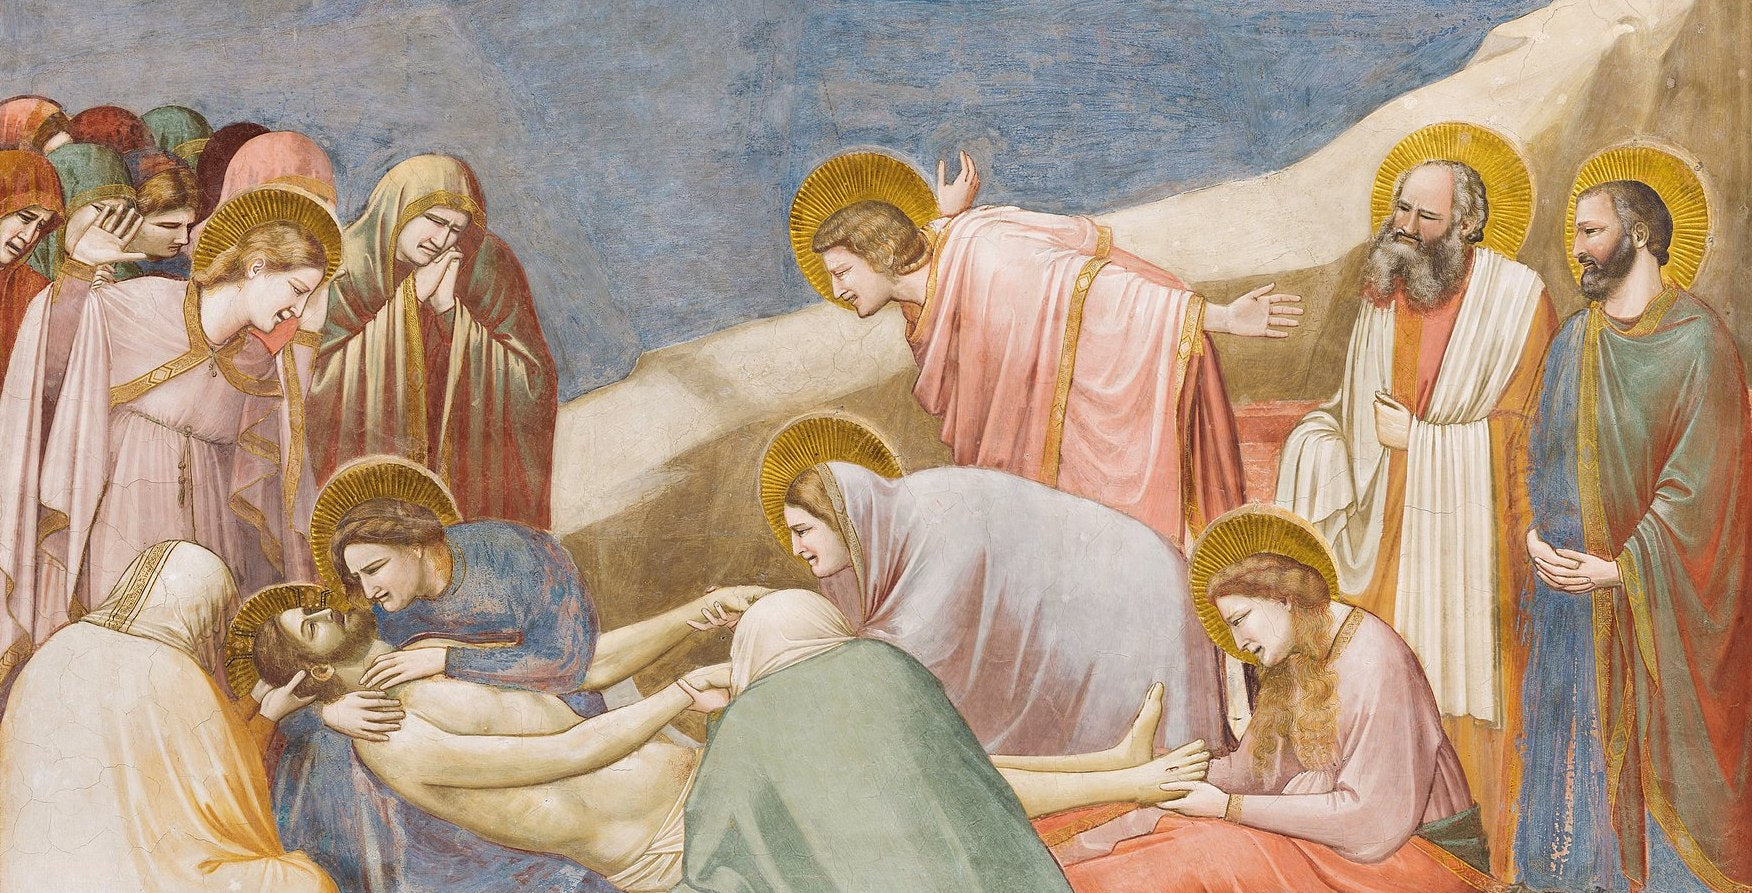 Giotto di Bondone (c.1267-1337)